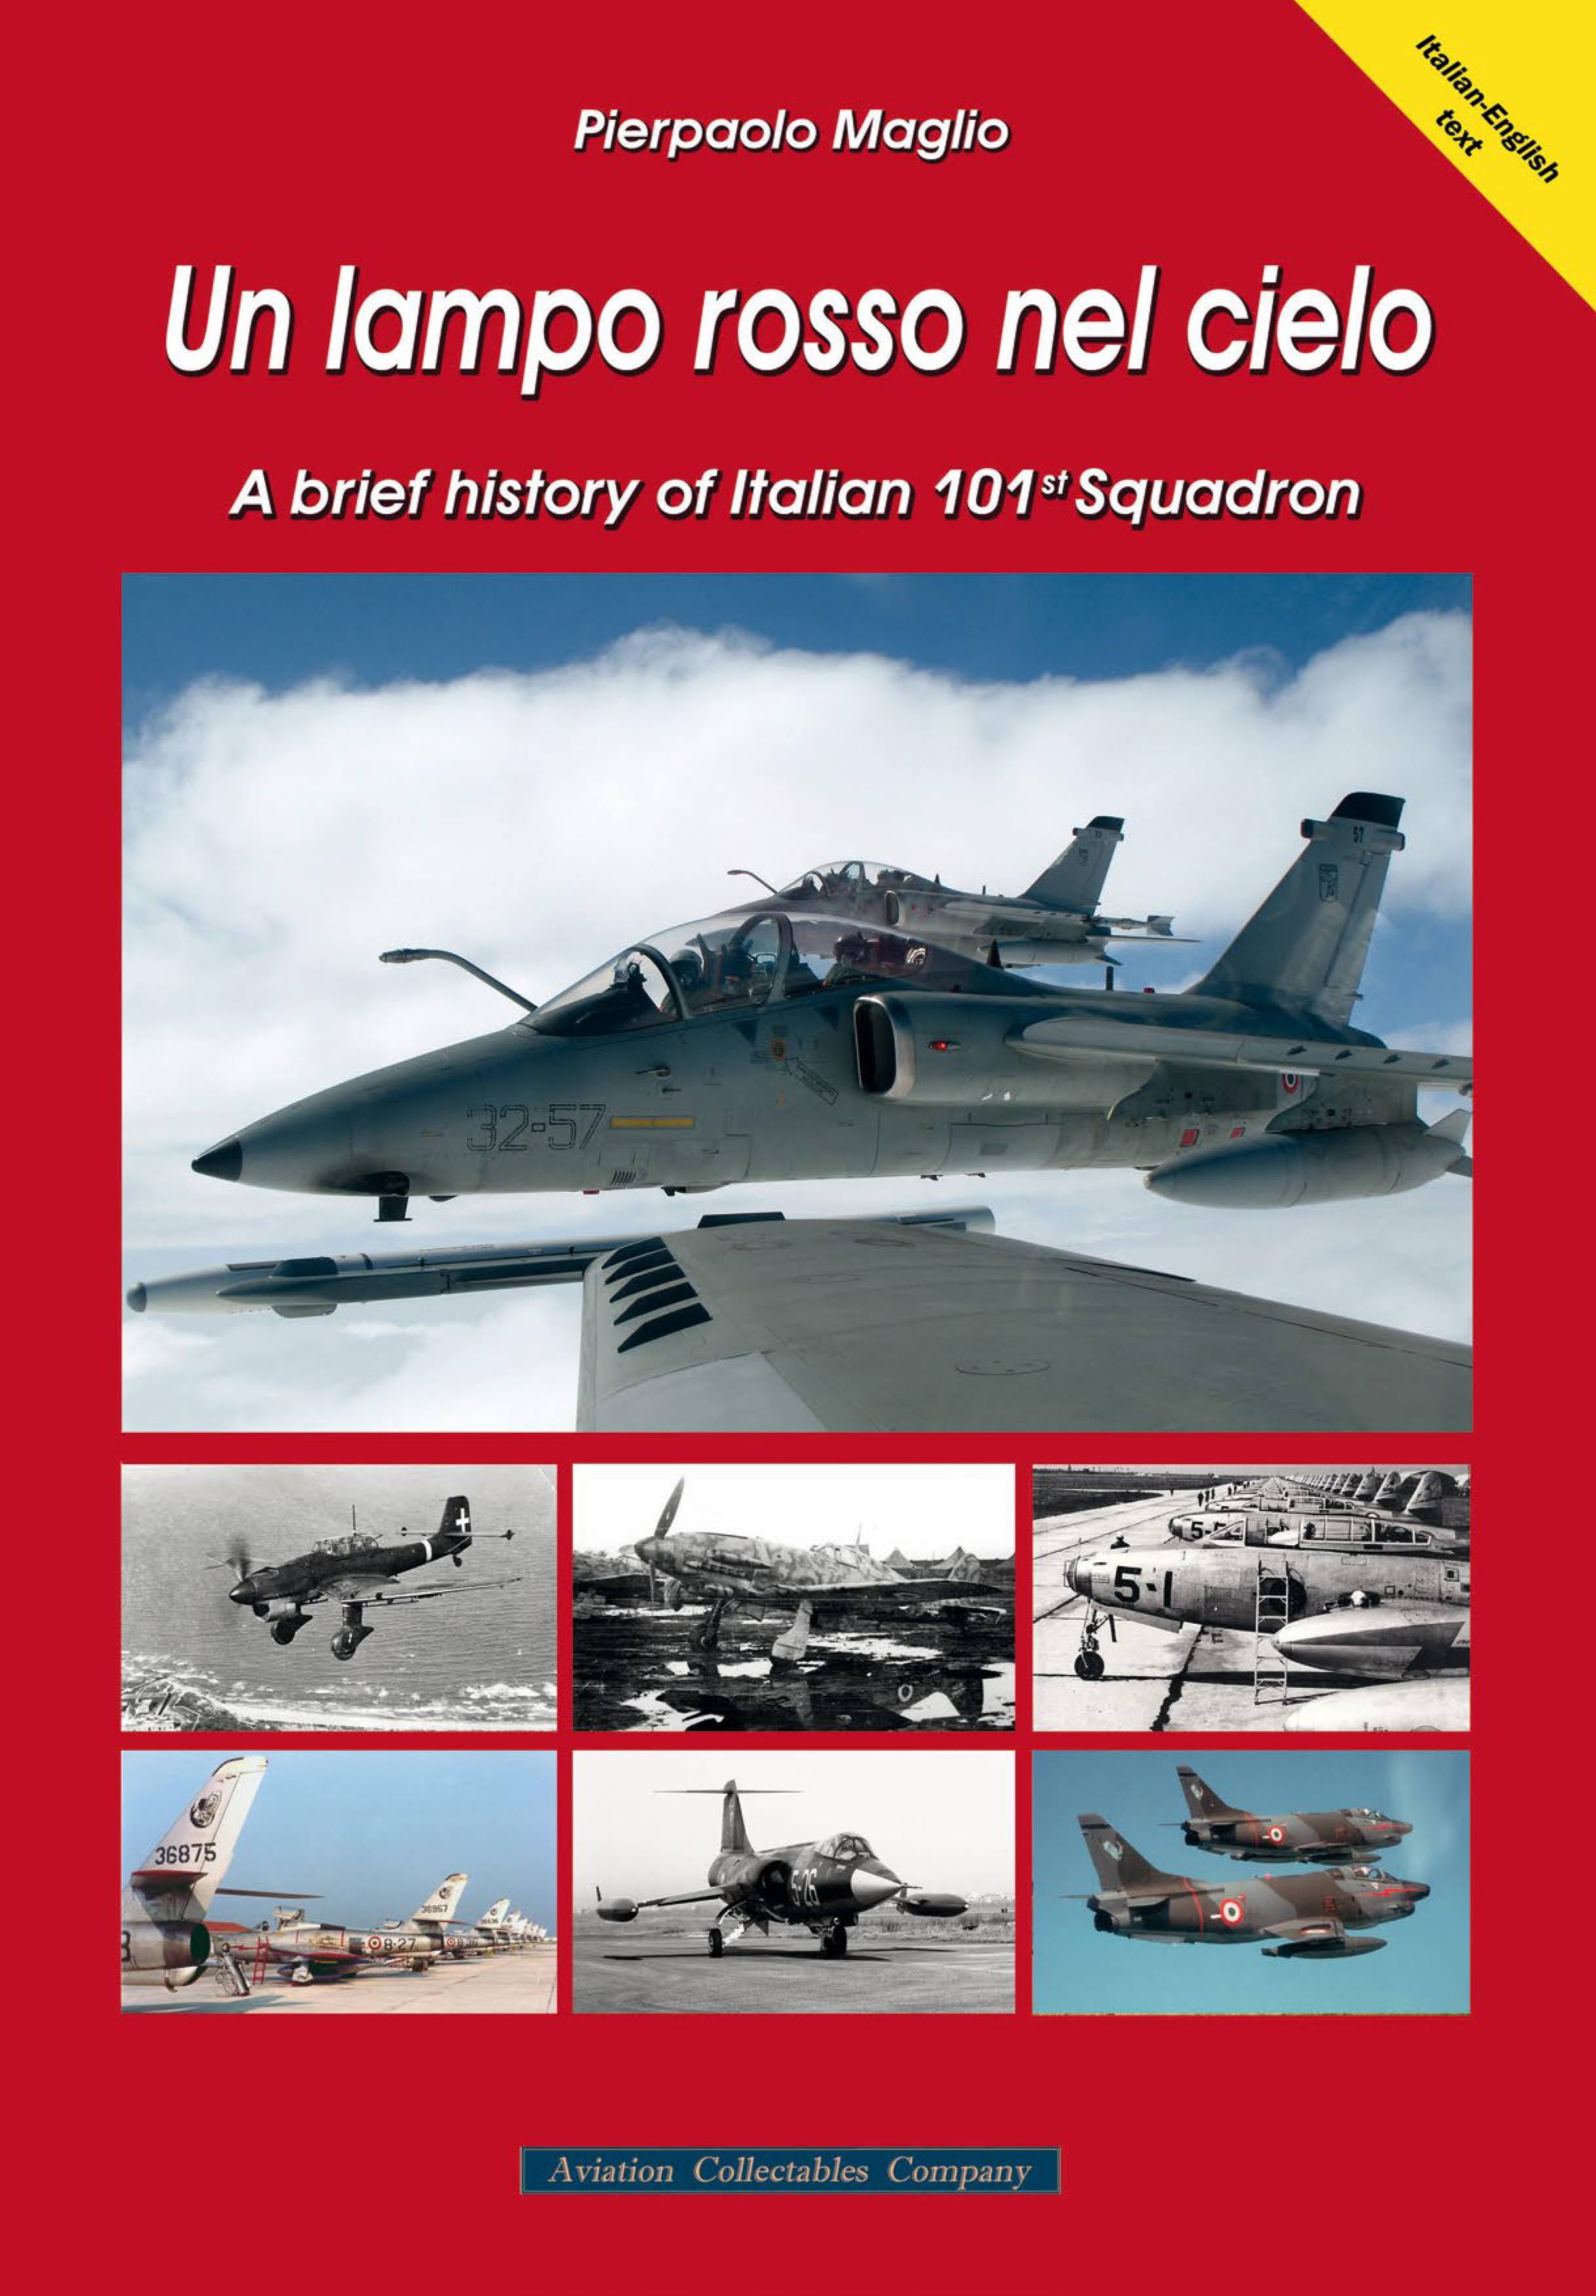 La nuova monografia sul 101° Gruppo dell’Aeronautica Militare